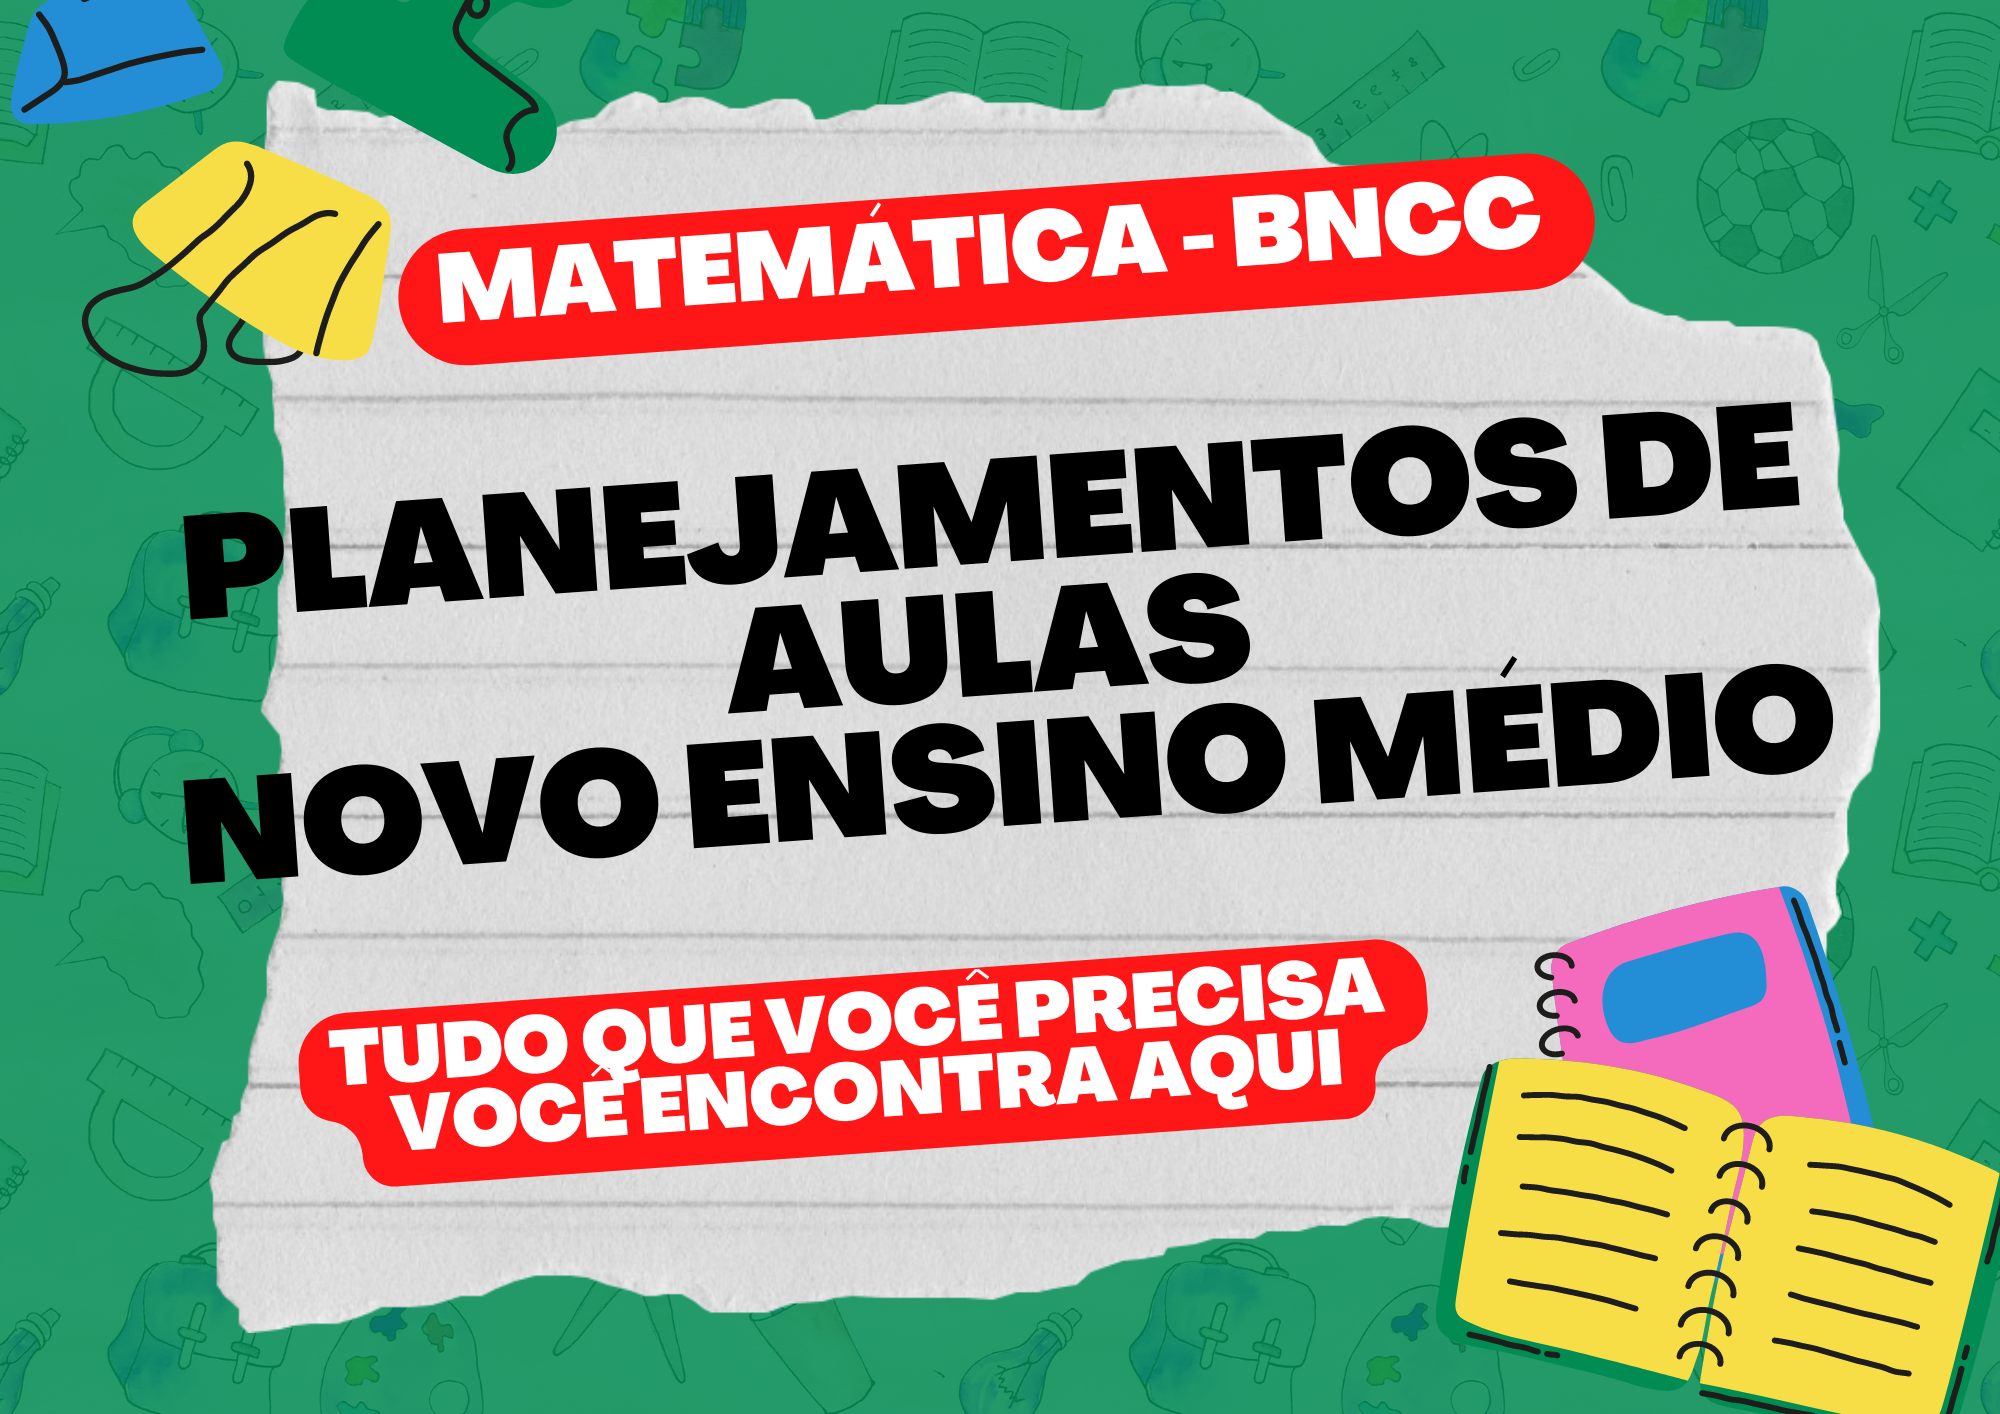 Matemática BNCC planejamentos de aulas novo ensino médio tudo o que você precisa você encontra aqui